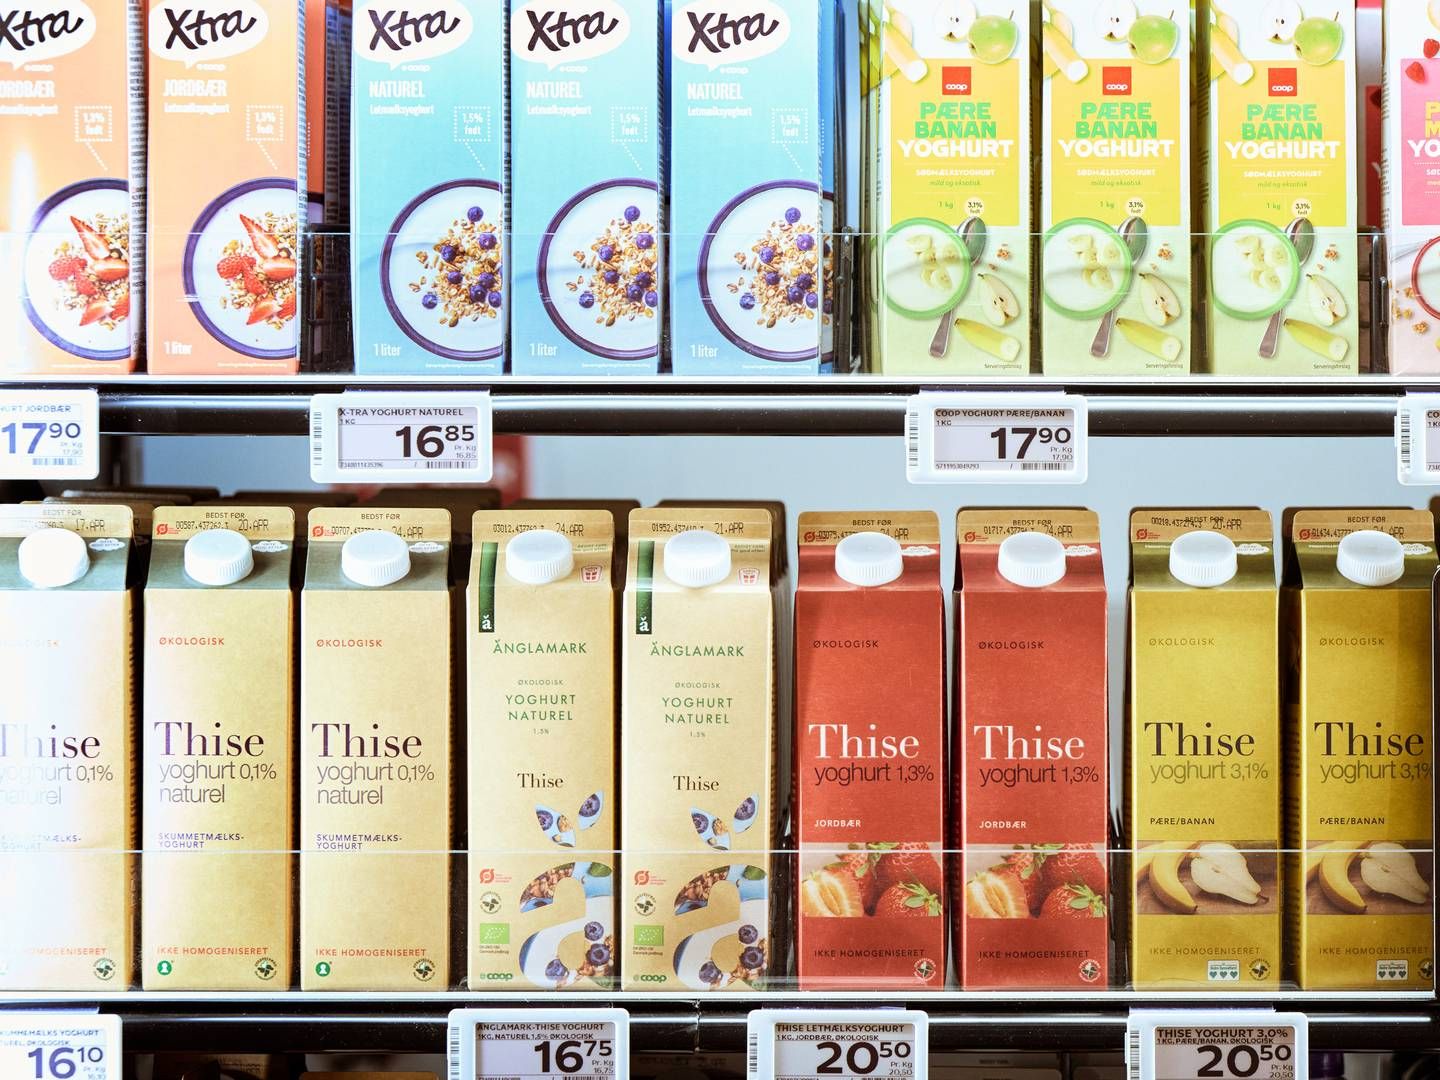 Privat label fylder mellem 20 og 30 pct. af sortimentet i en dagligvarehandel, ifølge Coop og Dagrofa. | Foto: Niclas Jessen/coop/pr